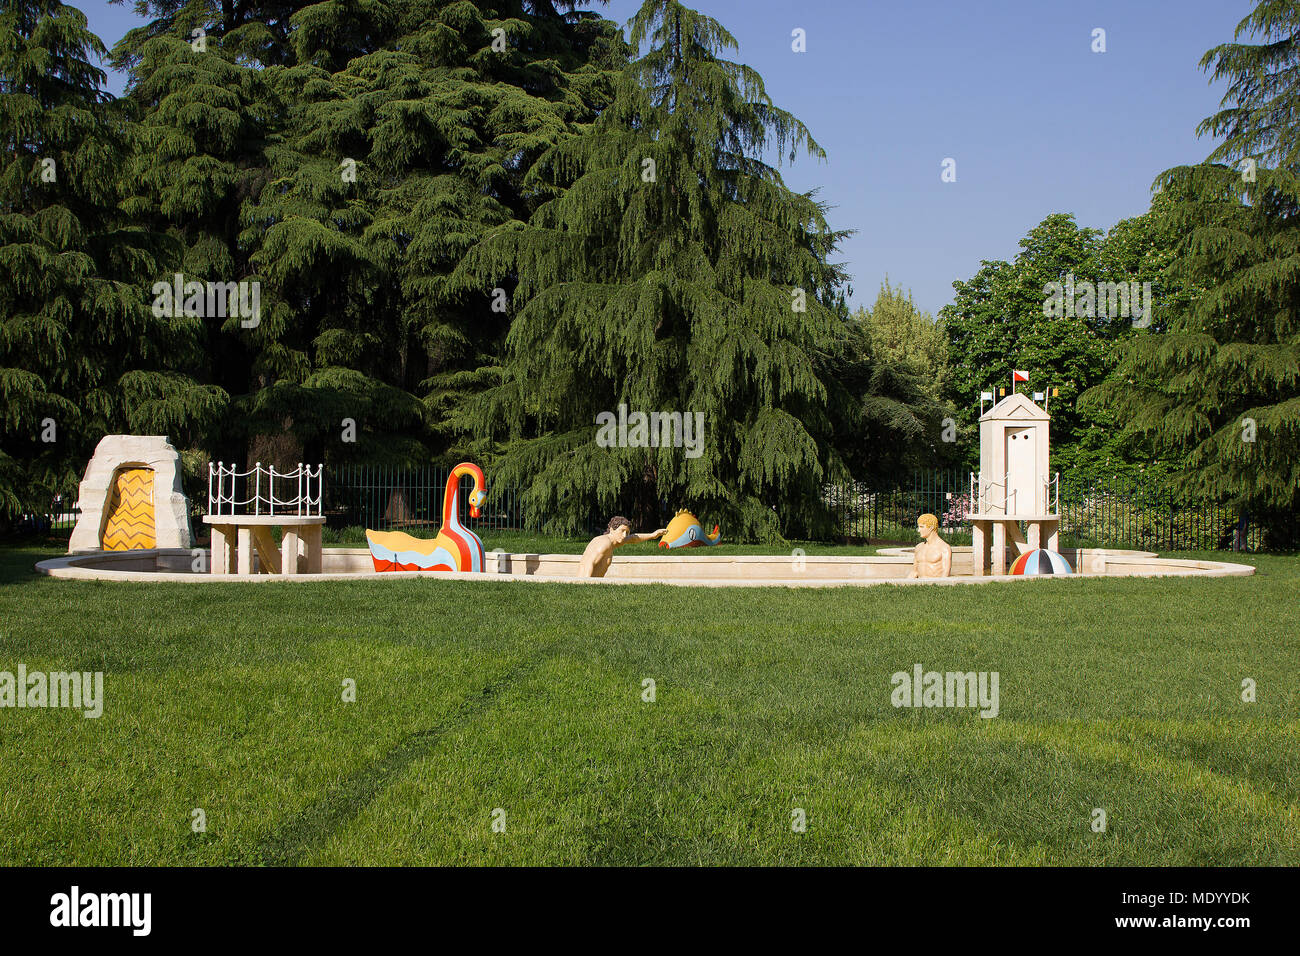 La Treinnale di Milano, Mailand, Italien, Outdoor Garten Skulpturen Stockfoto